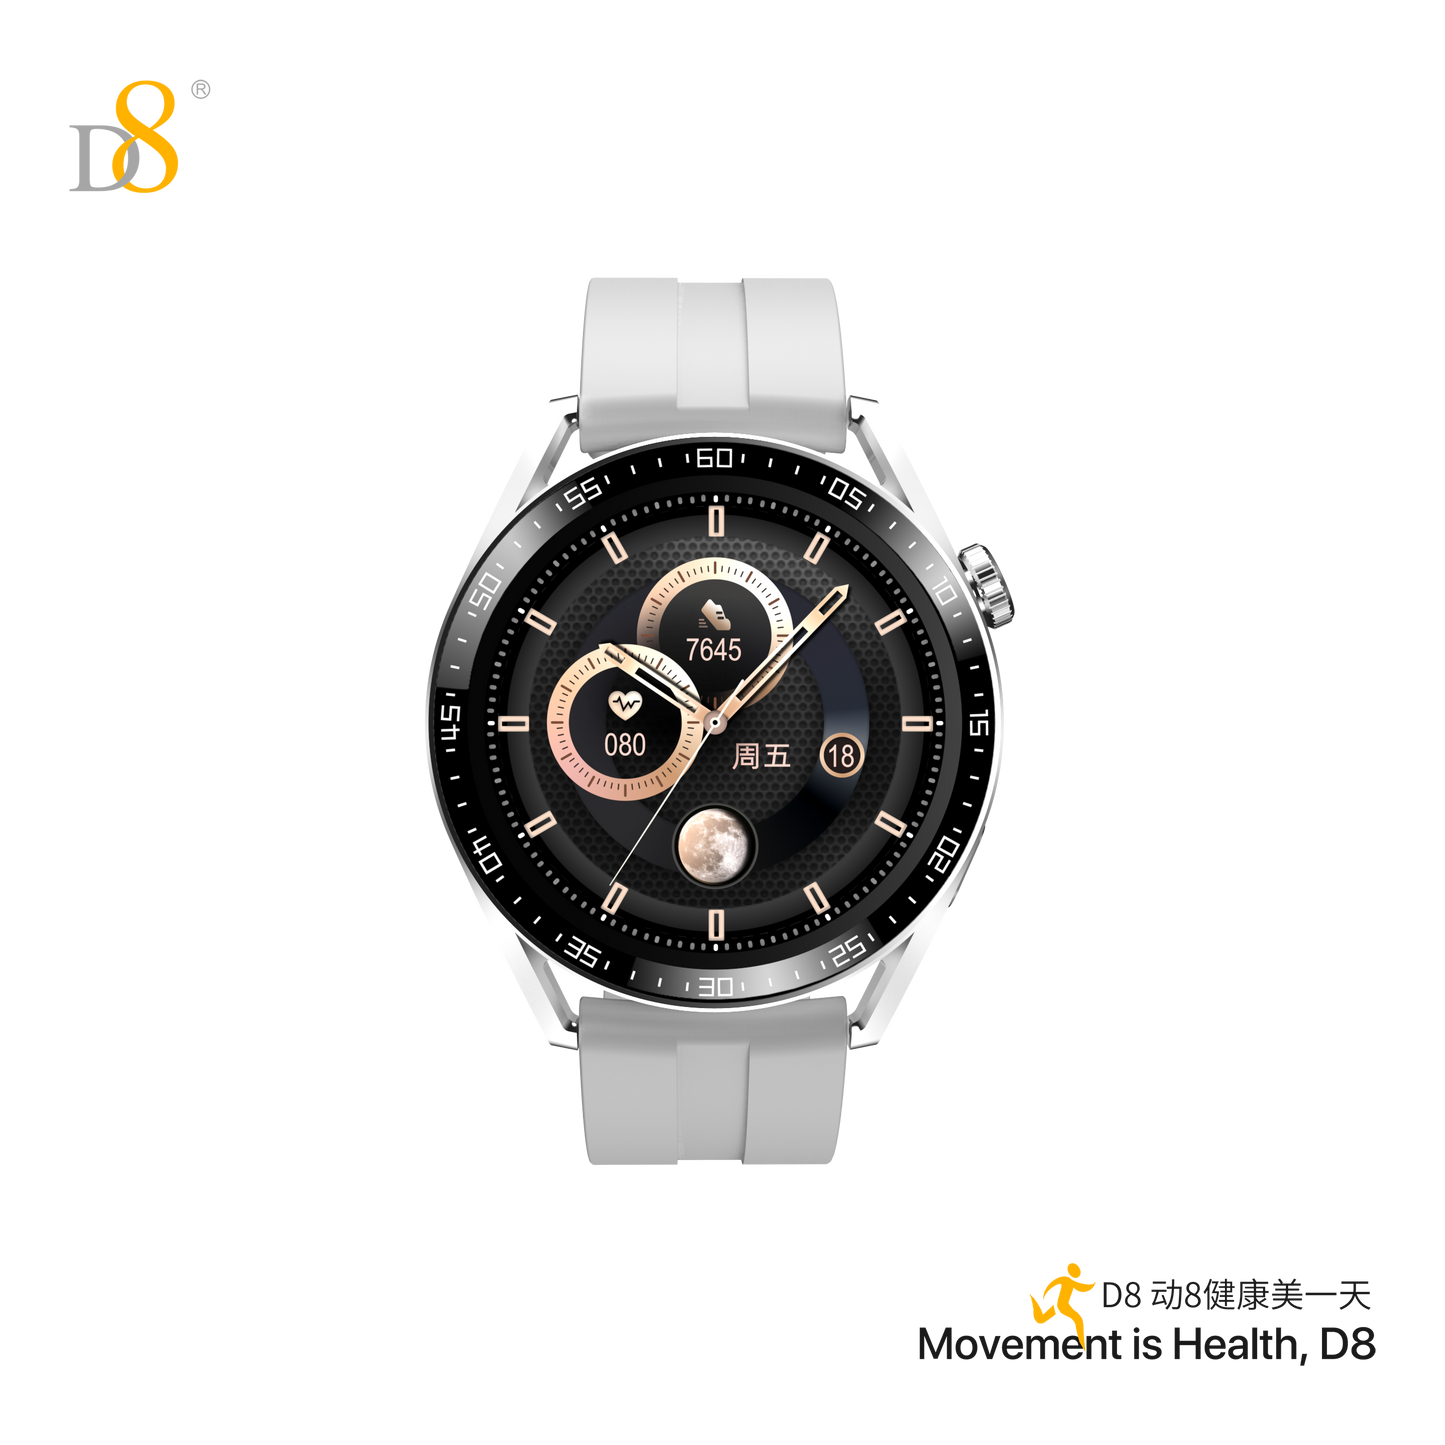 D8智能手表运动手表带蓝牙通话功能UP2